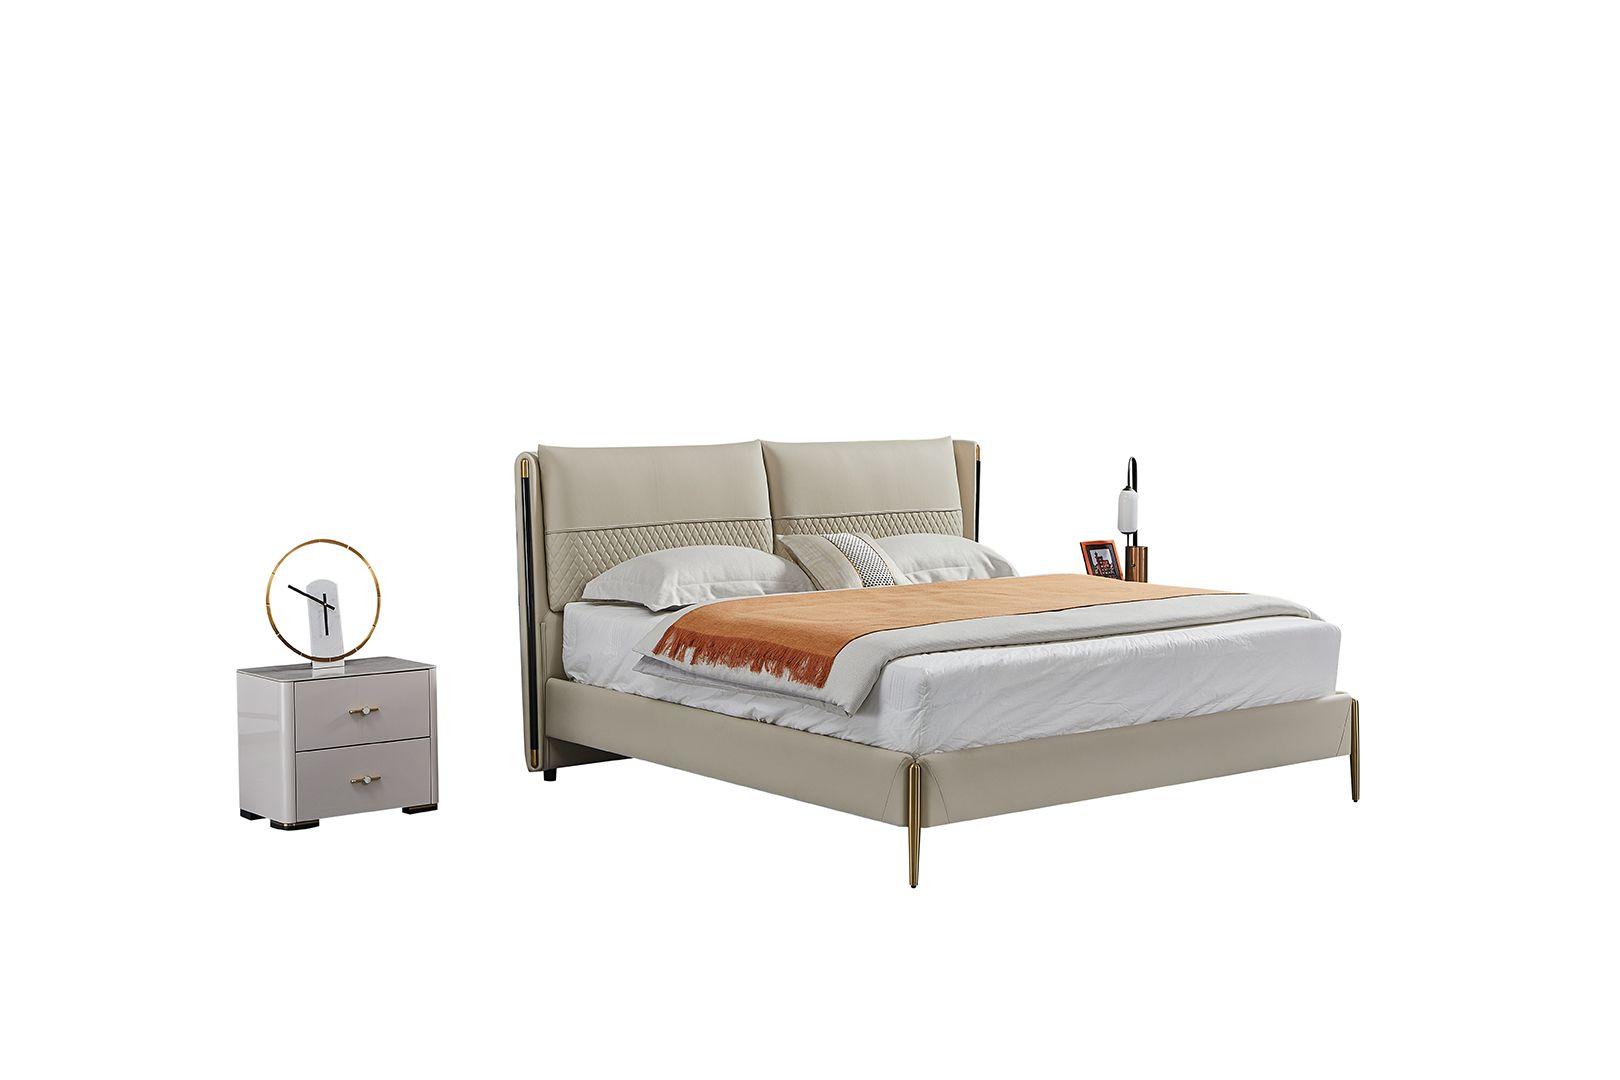 Contemporary, Modern Platform Bedroom Set B-Y2010-EK / NS-Y2010 B-Y2010-EK-3PC in Gray Genuine Leather